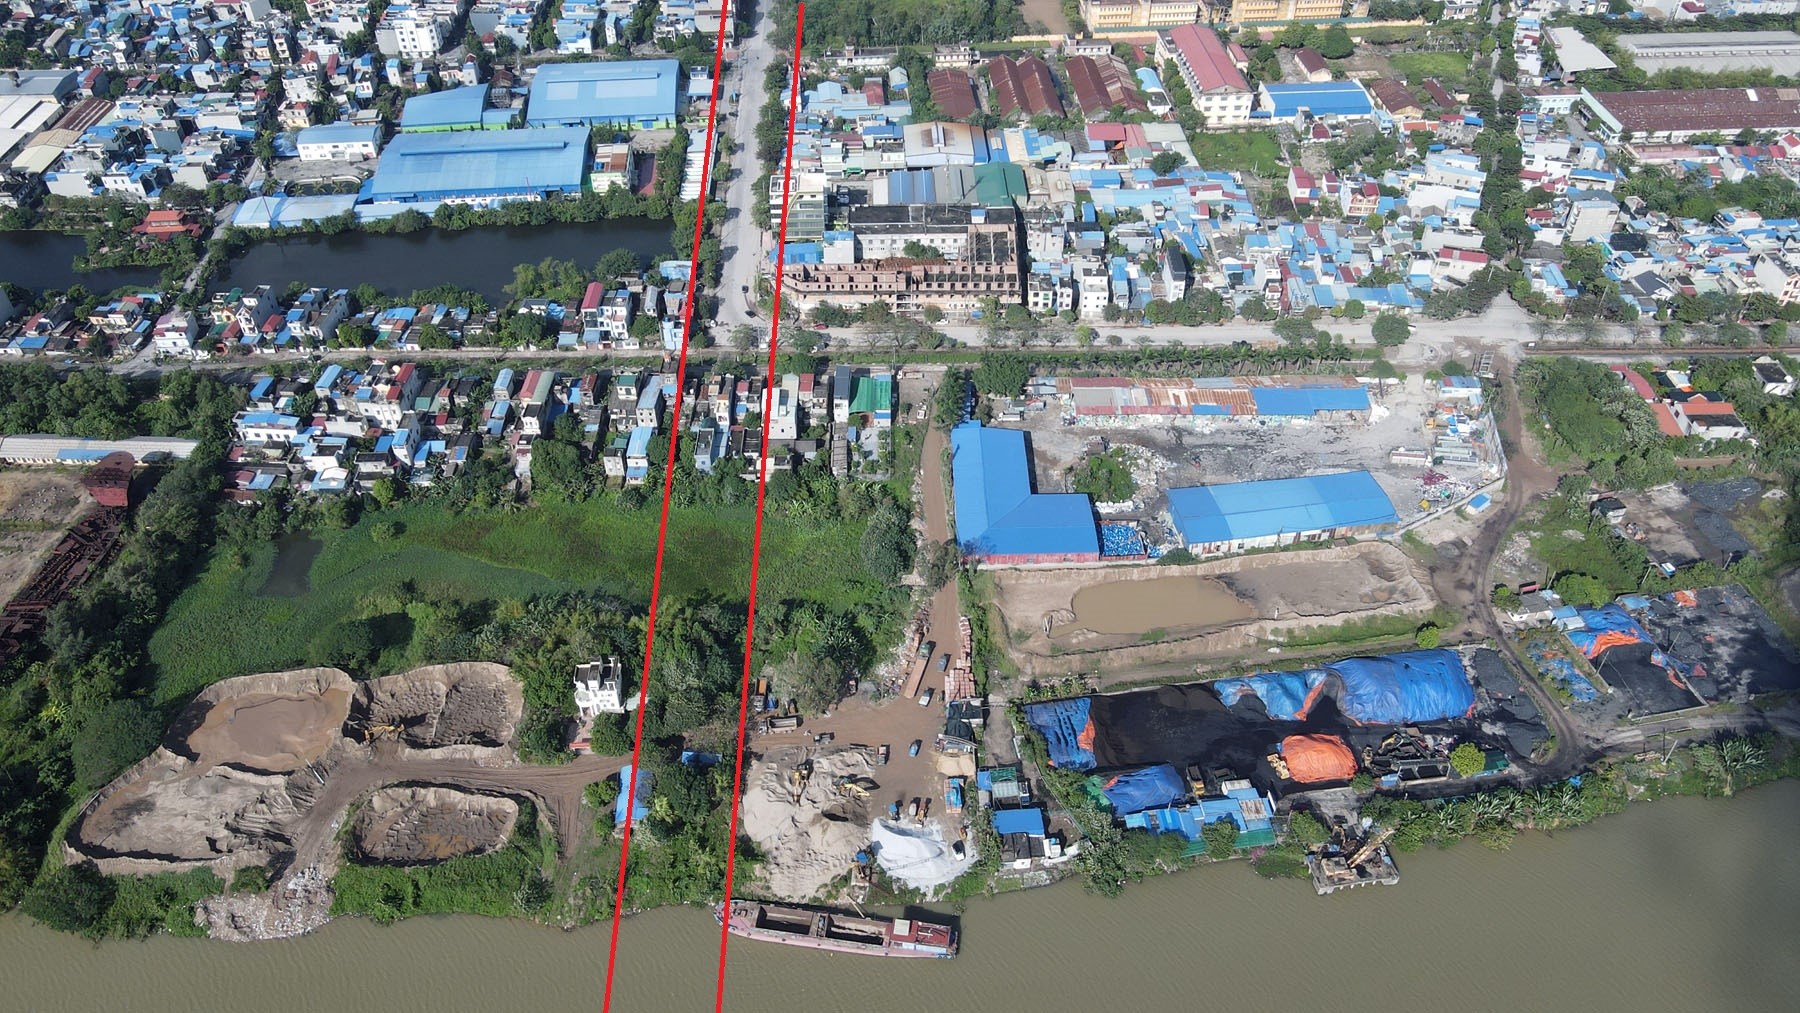 Nam Định: Cận cảnh vị trí bắt đầu xây cầu qua sông Đào trị giá 1.200 tỷ đồng